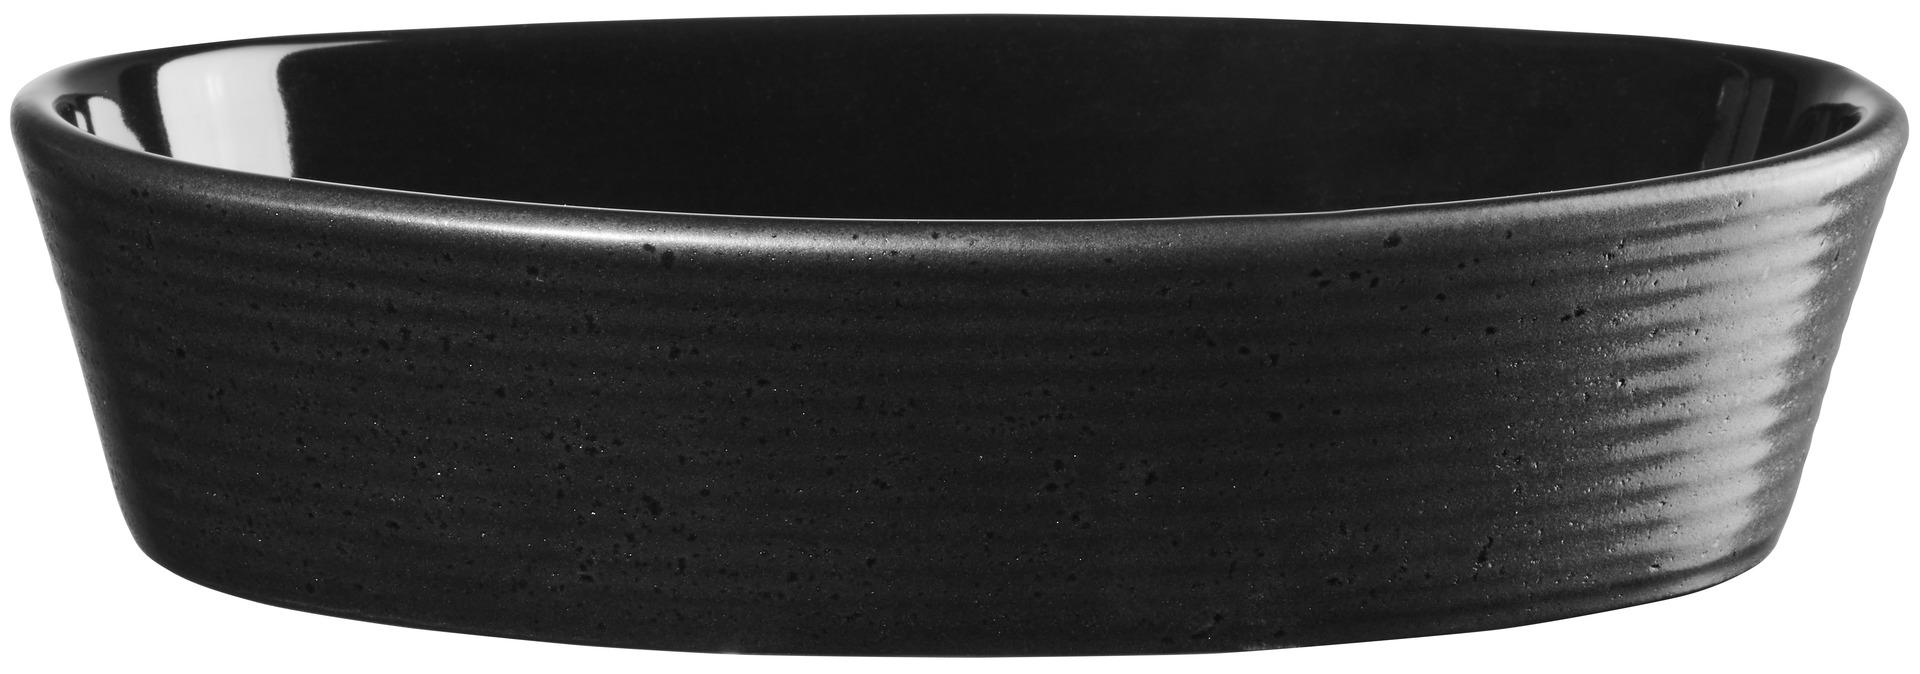 ASA Auflaufform oval, black kitchen'art